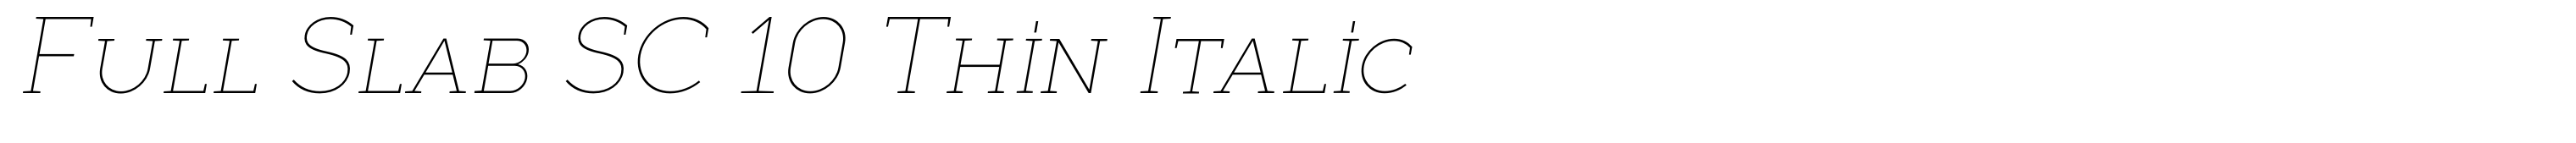 Full Slab SC 10 Thin Italic